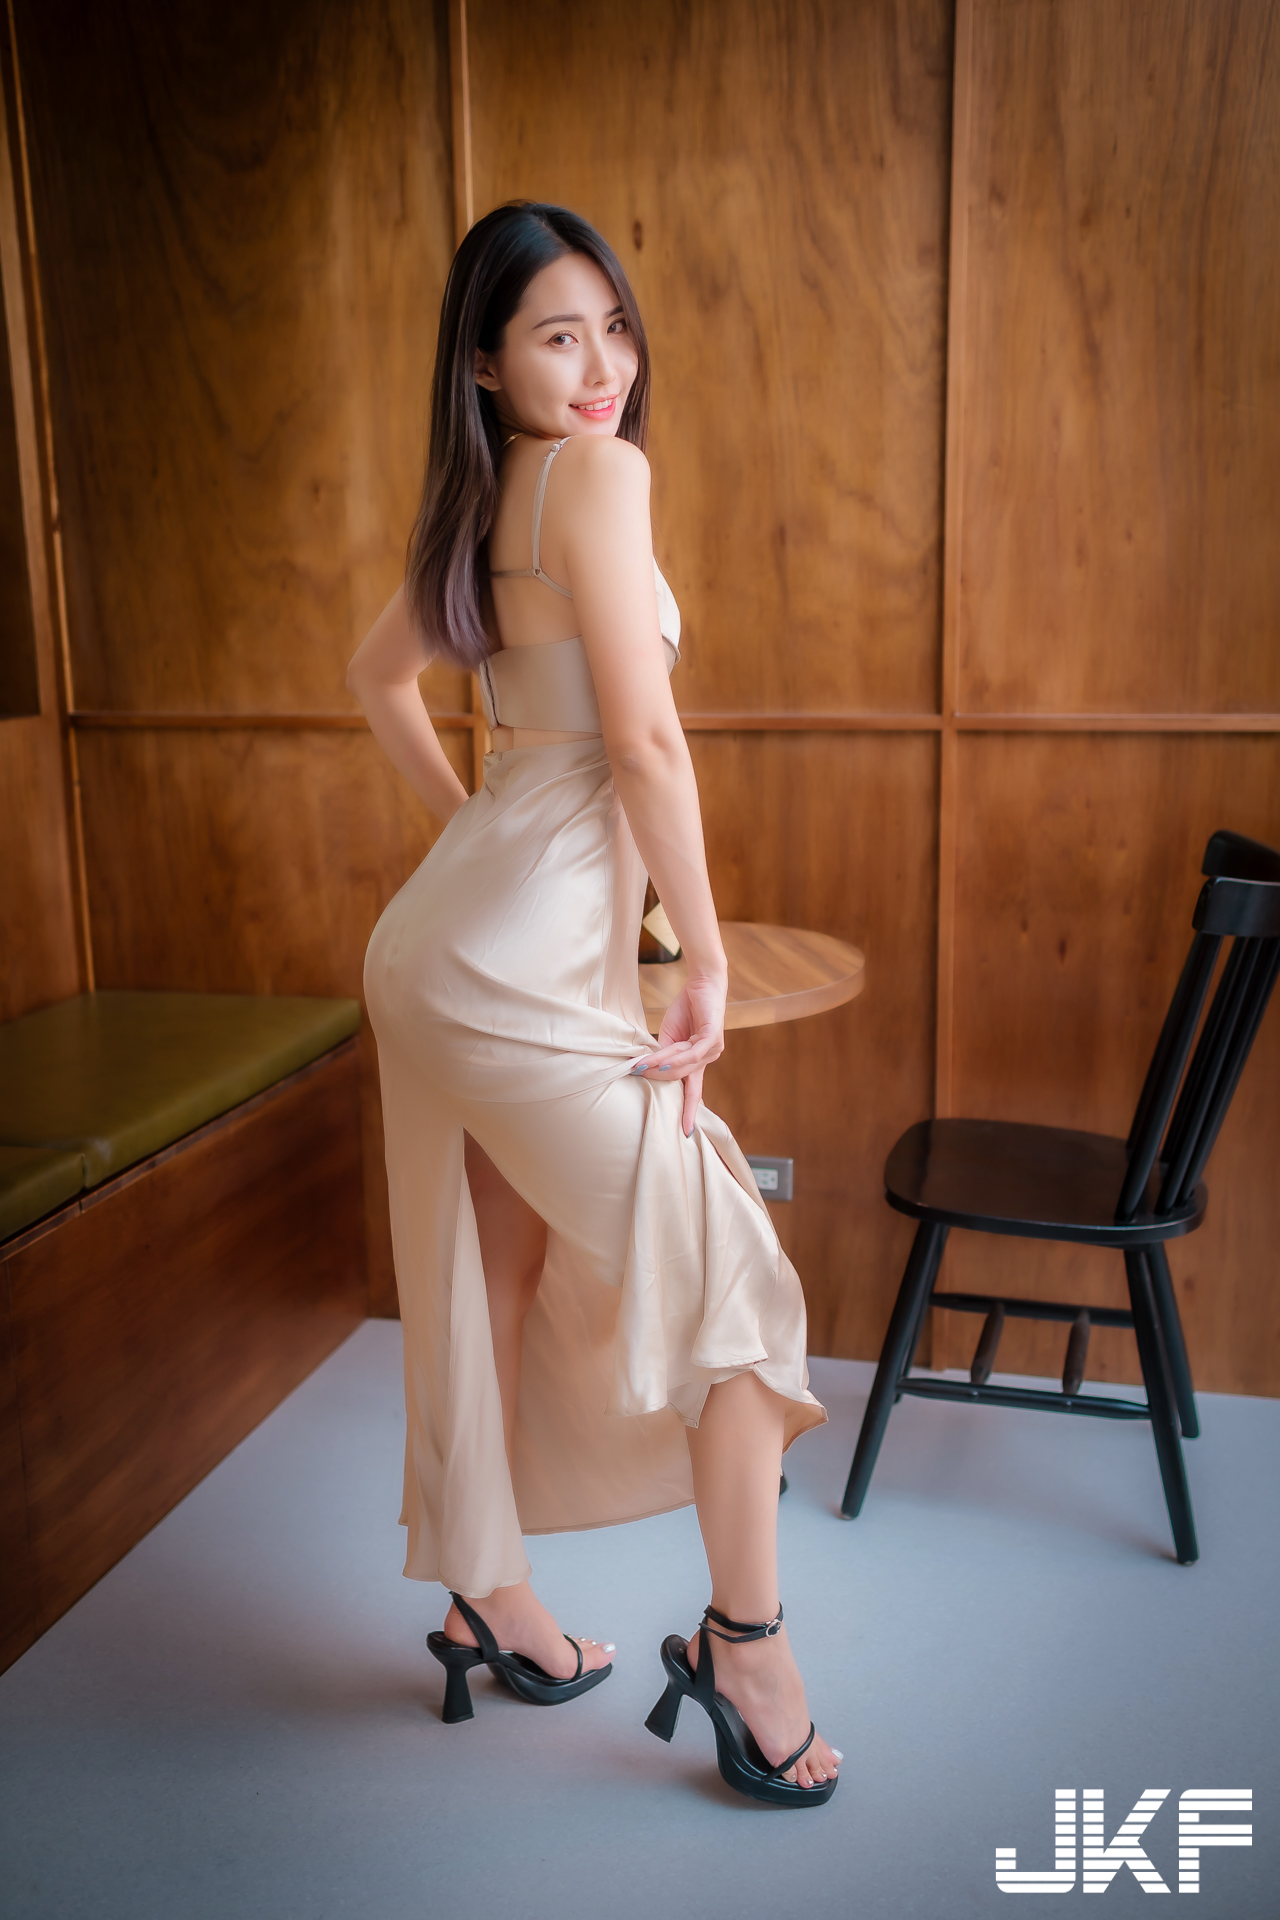 【GG扑克】長腿正妹「Misty」洋裝設計太性感，「低胸高衩」秀曼妙曲線好犯規